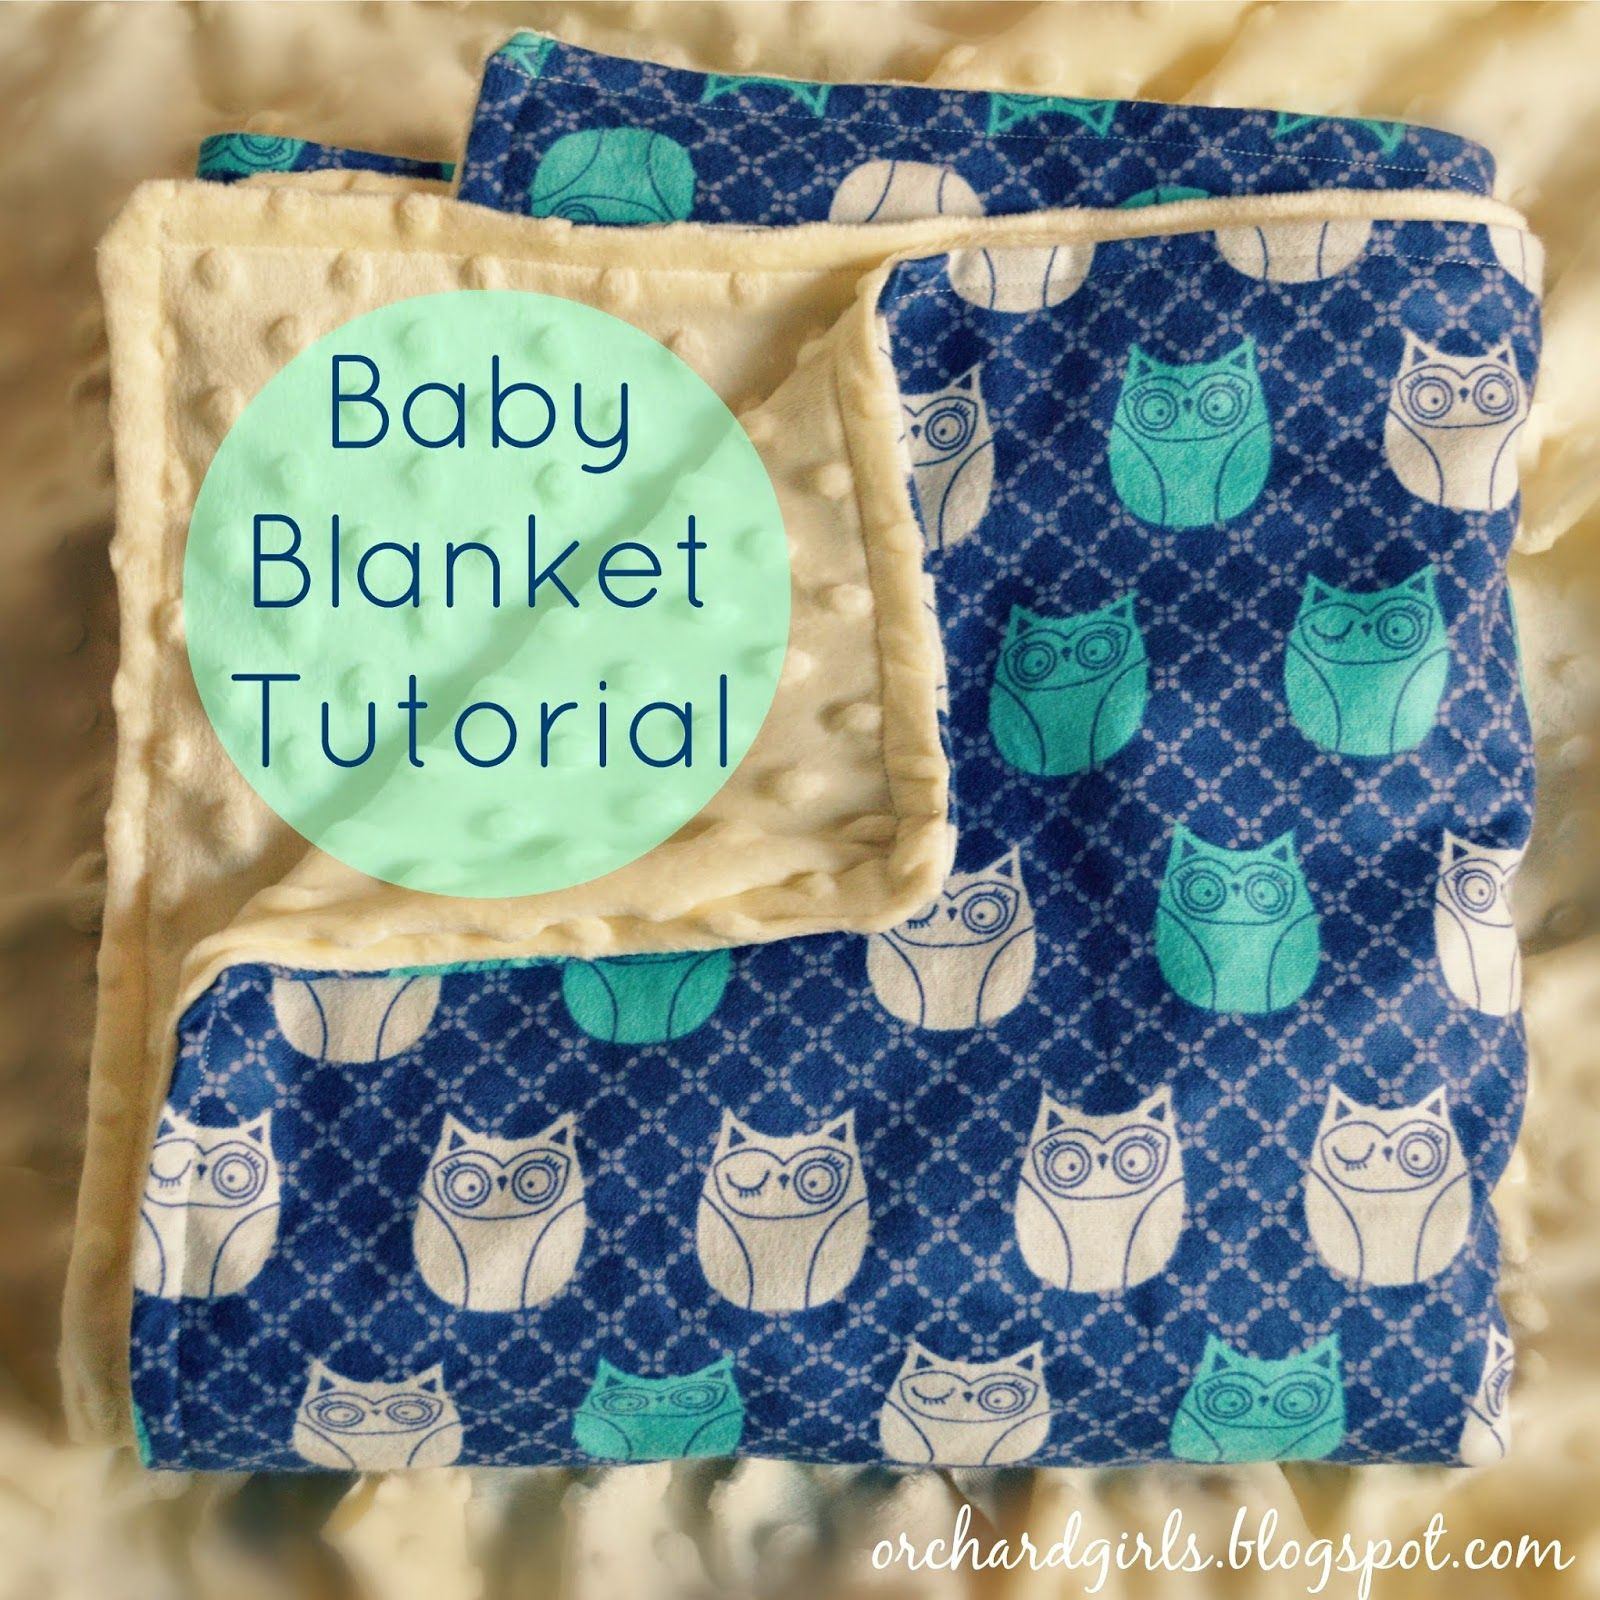 DIY Fleece Baby Blanket
 Orchard Girls Super easy DIY Baby Blanket Tutorial with